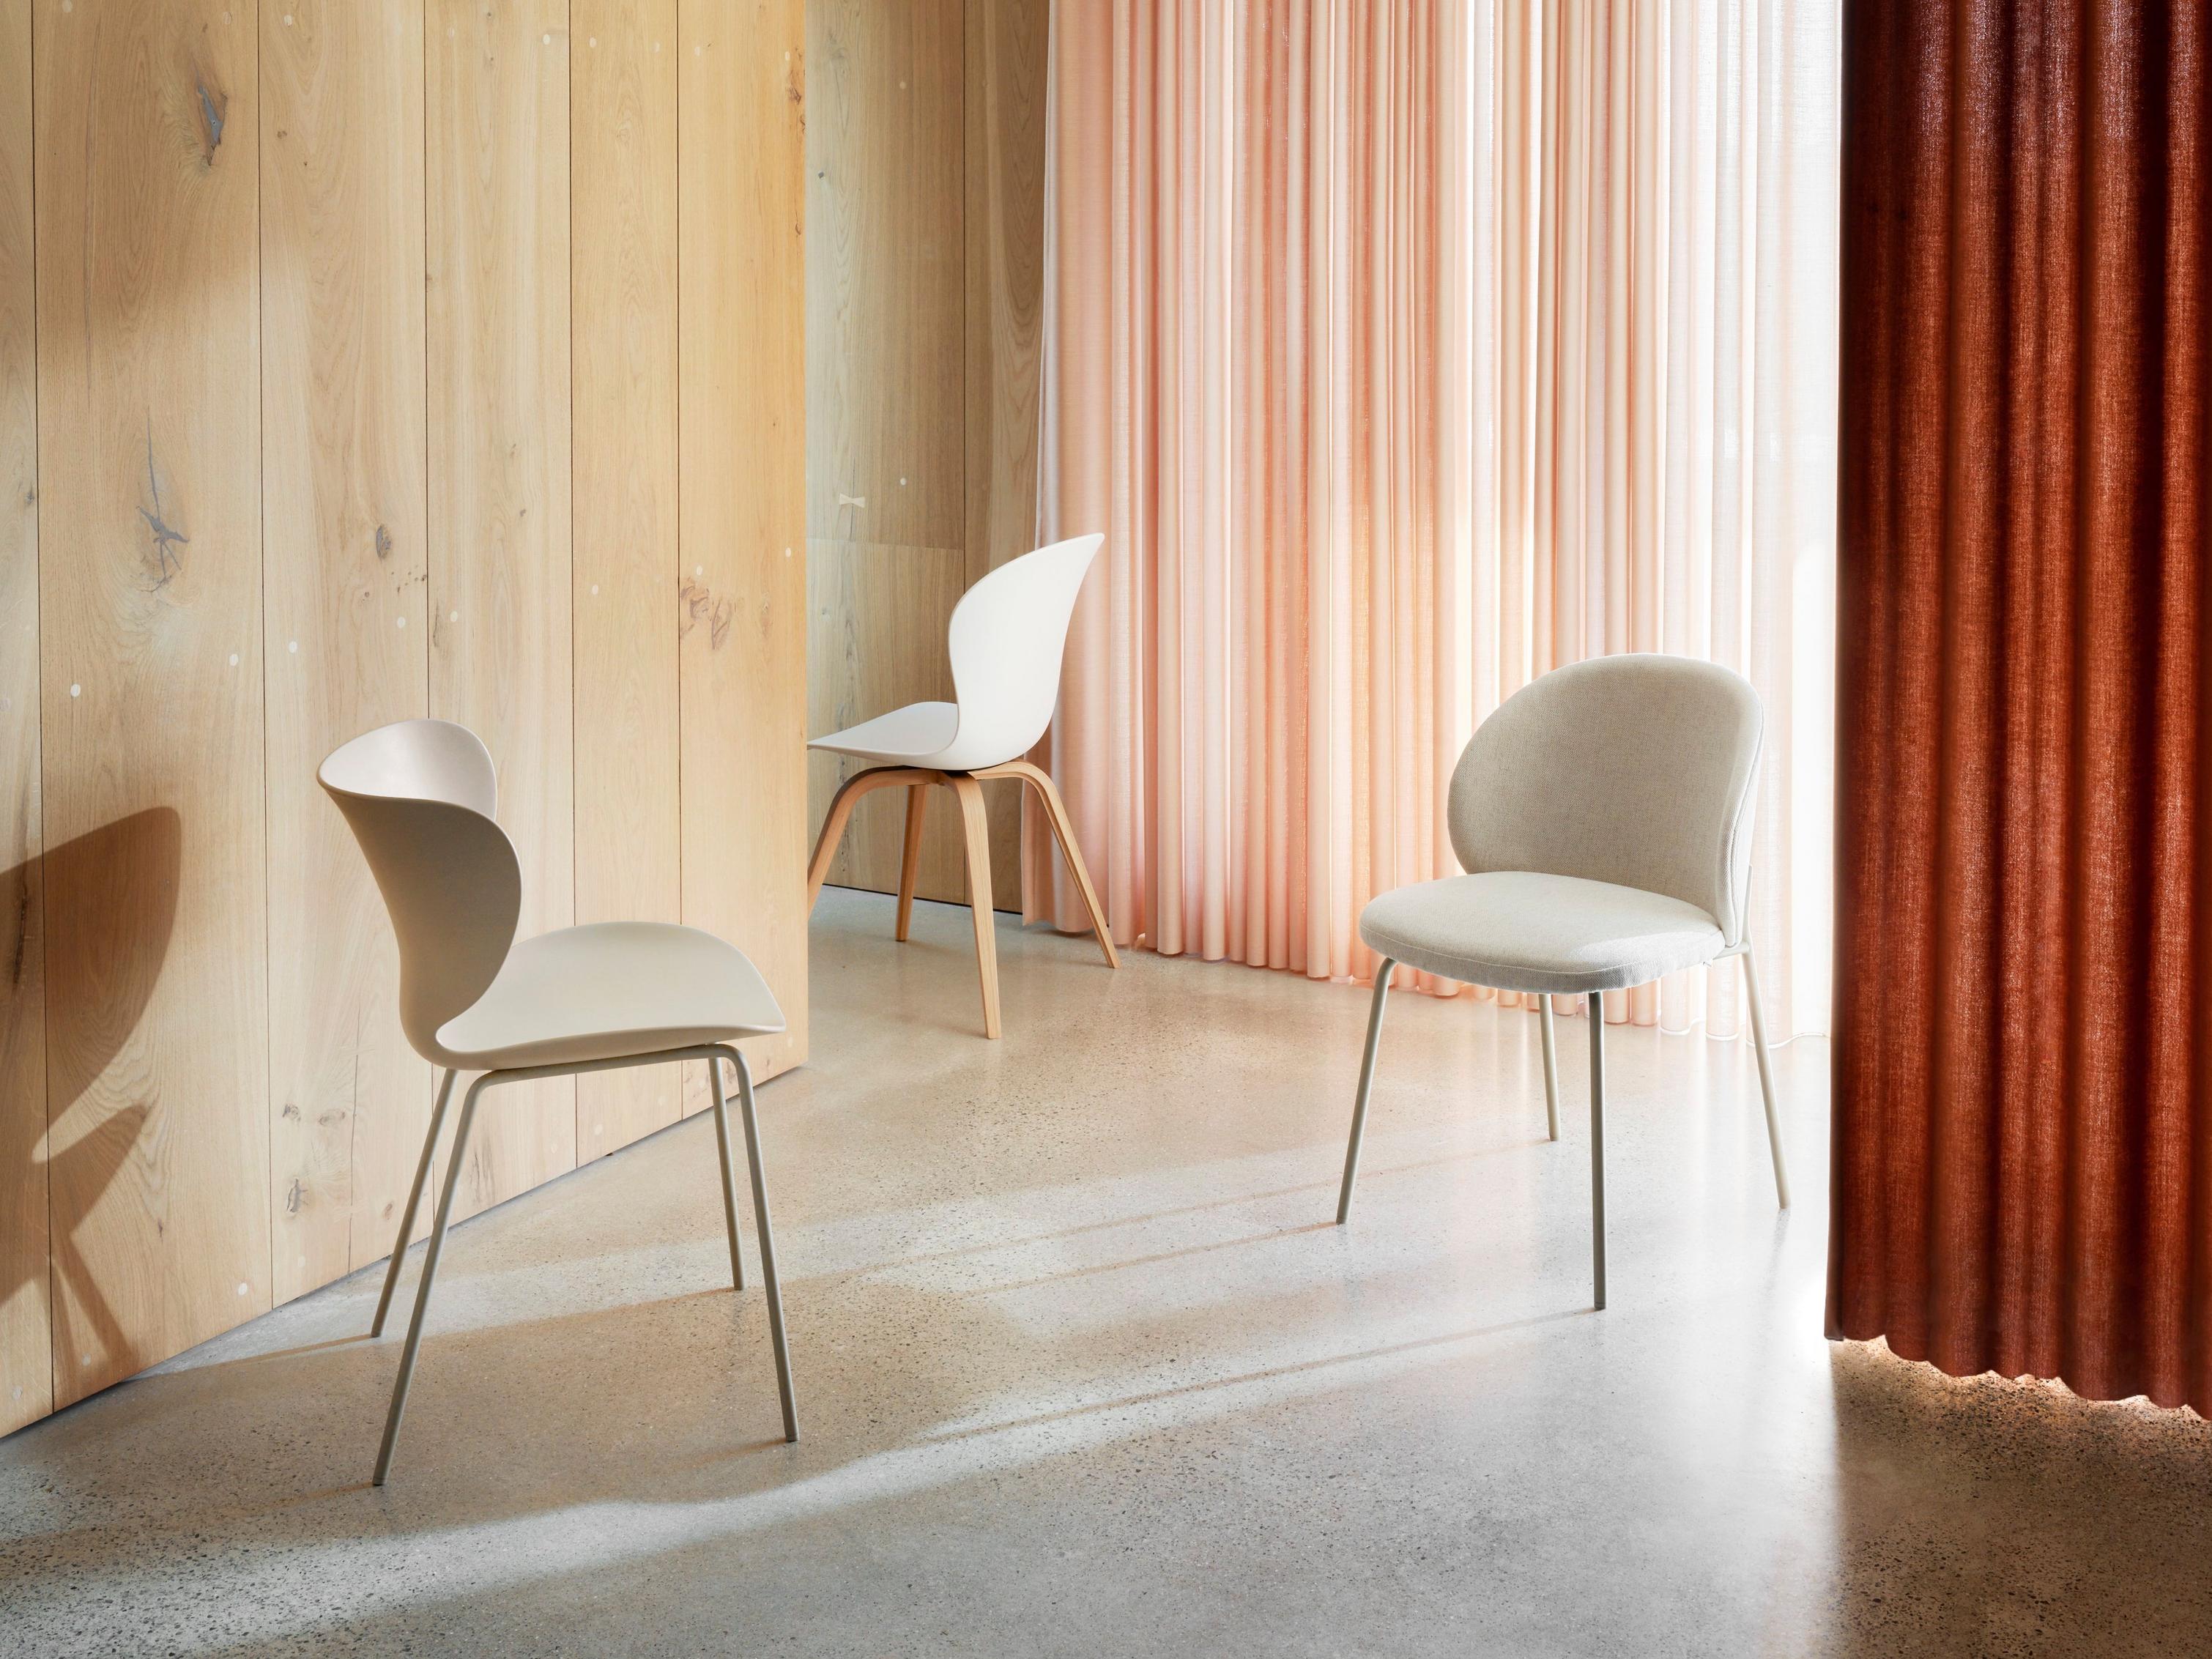 Moderní židle v pokoji s dřevěnou stěnou a nařasenými korálovými závěsy.